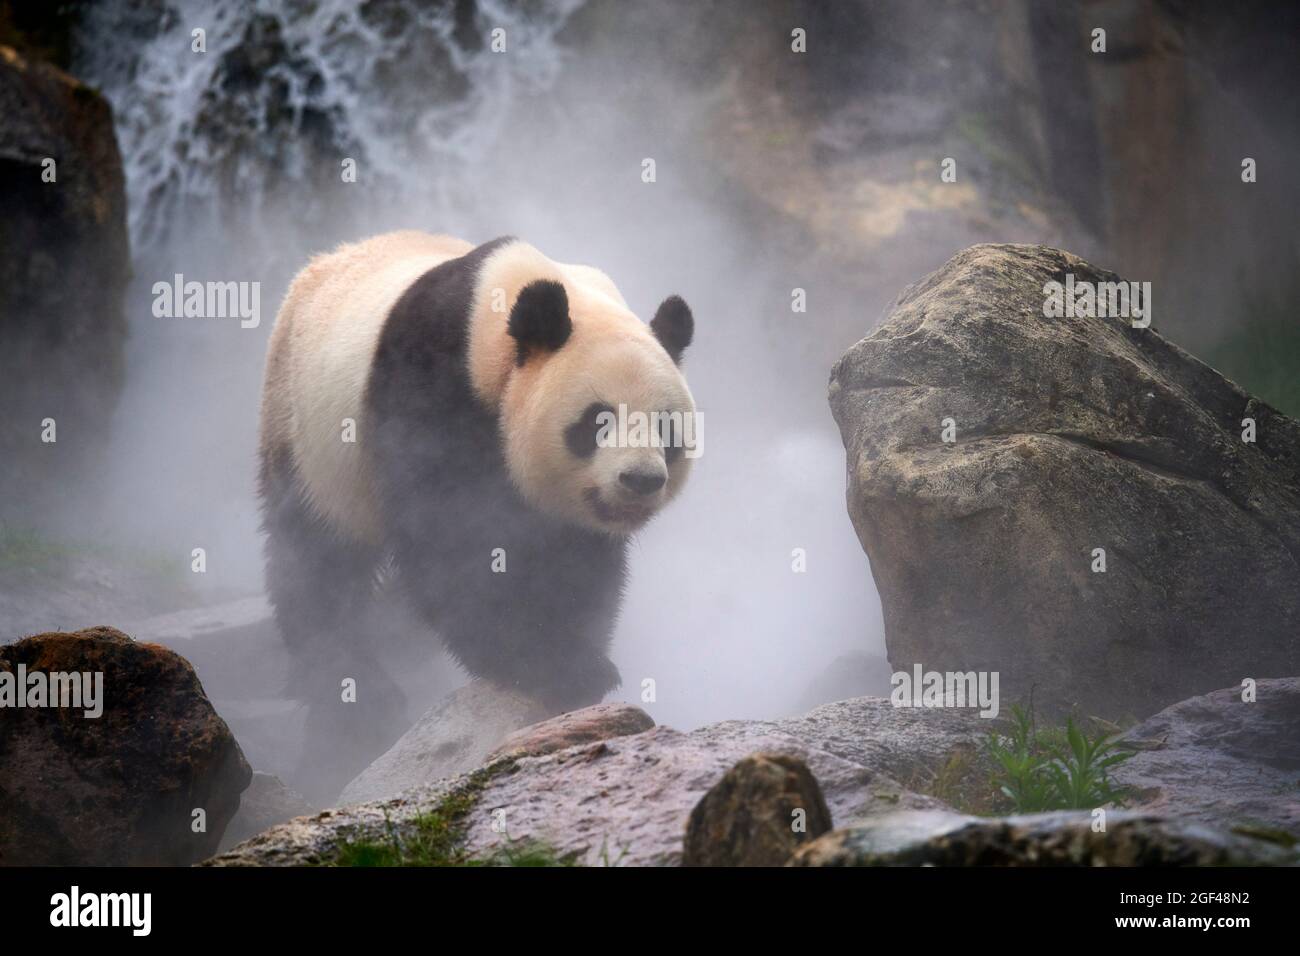 Panda géante (Ailuropoda melanoleuca) mâle dans son enceinte en brume, captive au zoo de Beauval, Saint Aignan sur cher, France. La brume est créée Banque D'Images